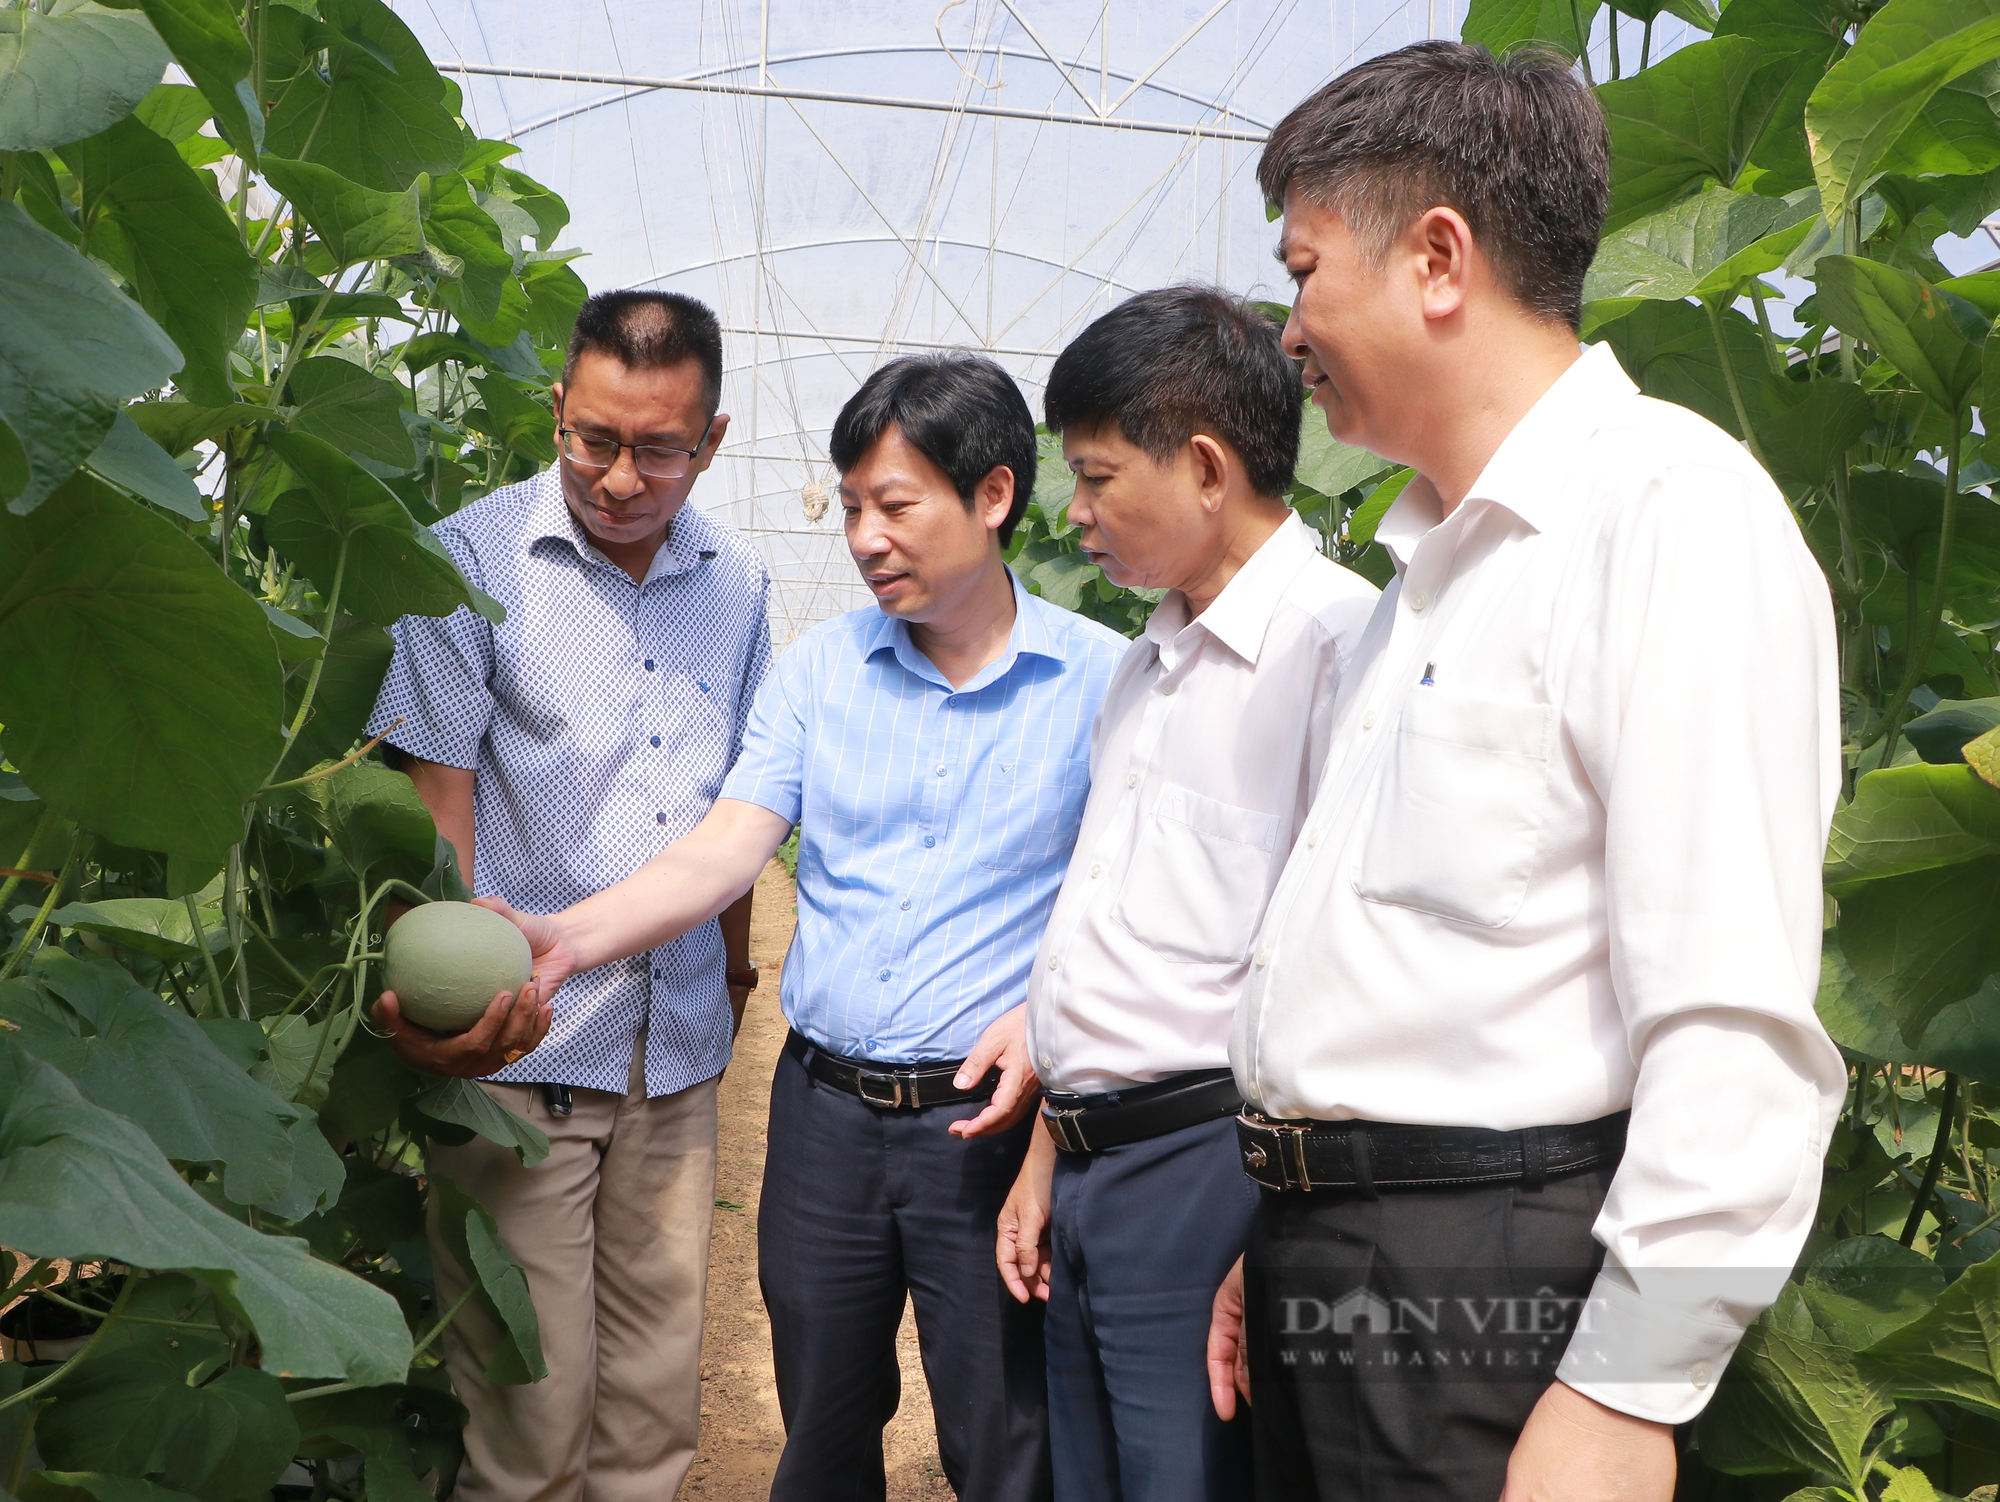 Phó chủ tịch TƯ Hội Nông dân Việt Nam Nguyễn Xuân Định thăm các mô hình trồng cây ăn trái tại Bình Phước - Ảnh 1.